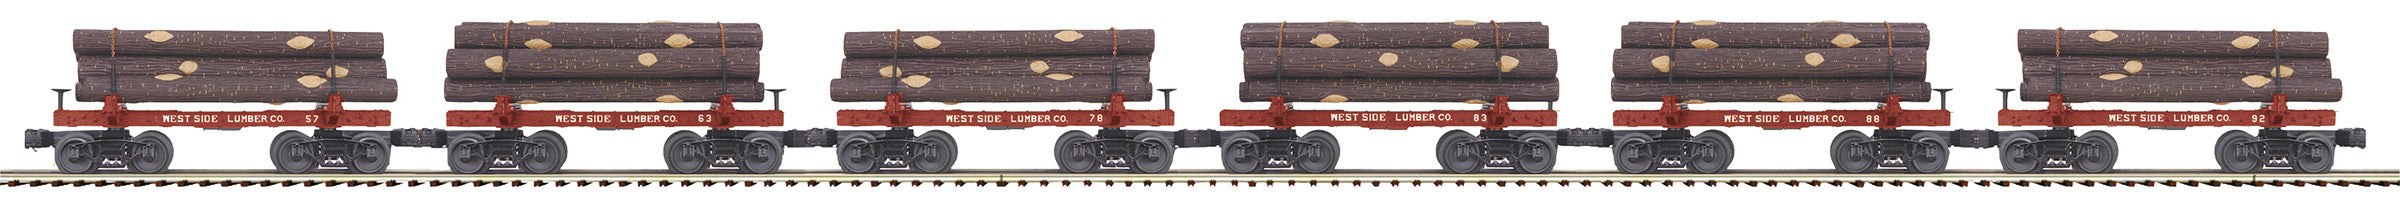 MTH 20-92329 - Skeleton Flat Car "West Side Lumber Co" w/ Log Load Set #1 (6-Car)